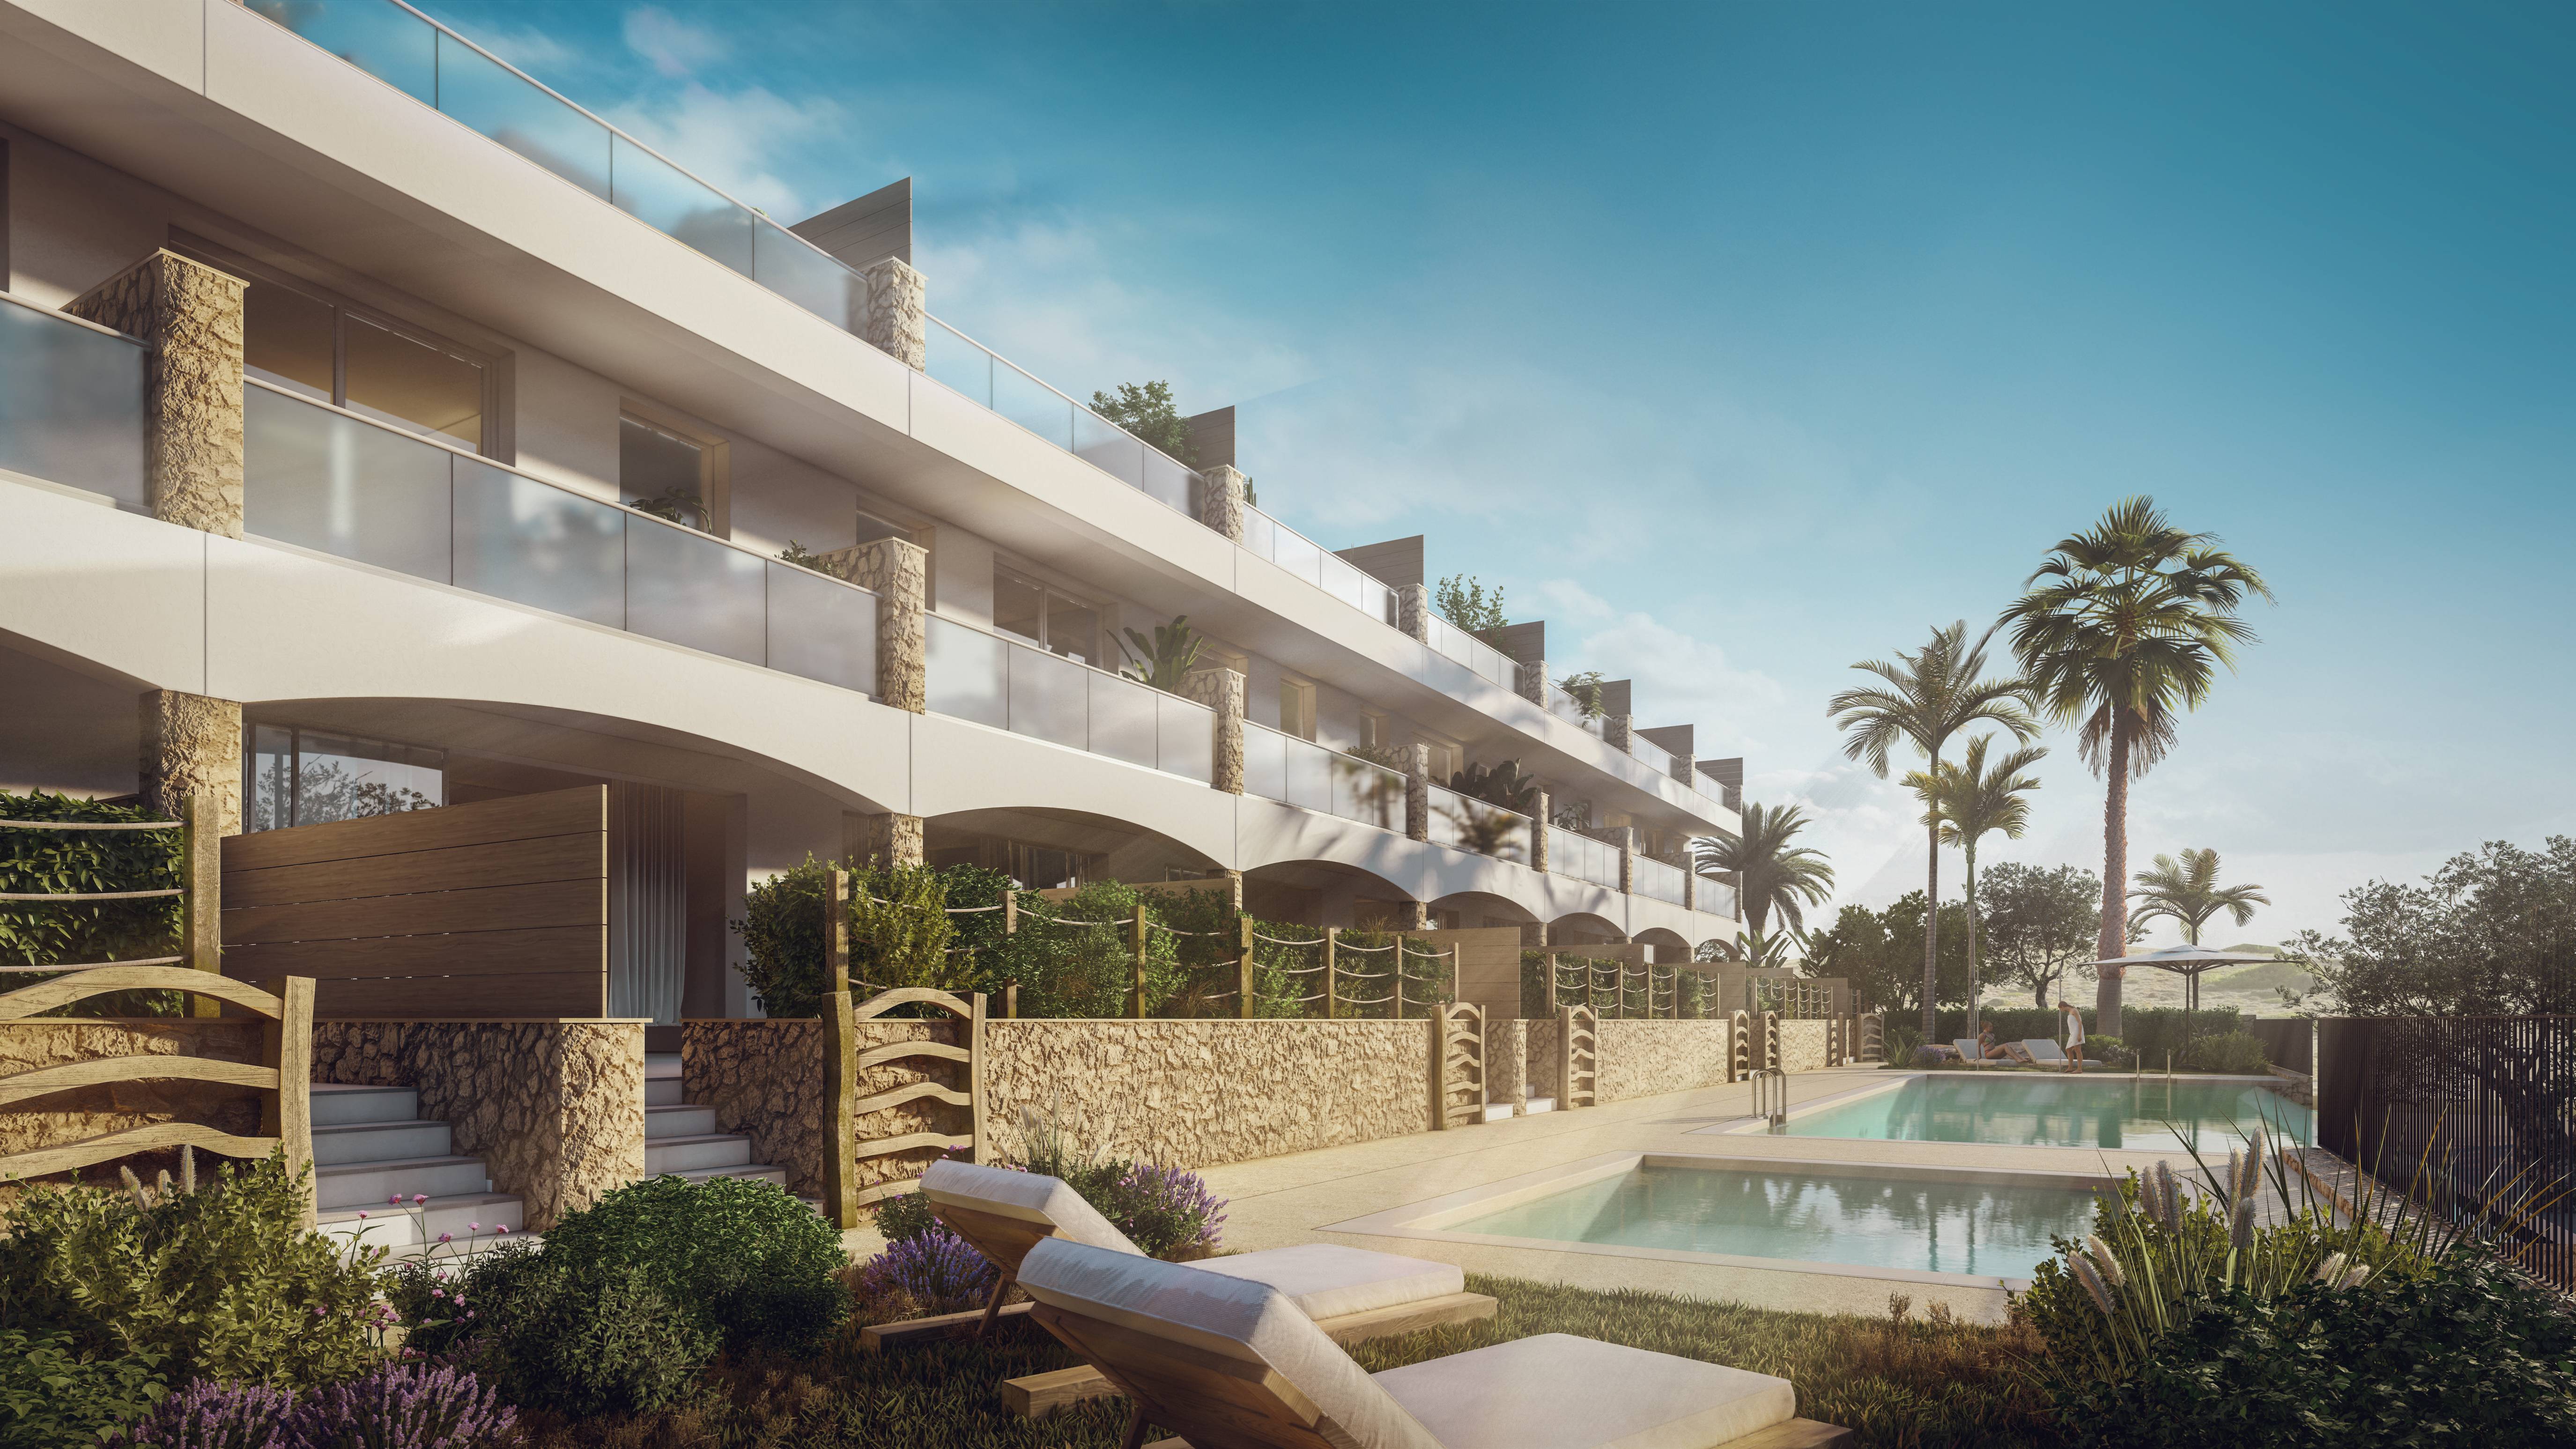 Promoción - ¡Obras iniciadas! Exclusiva promoción residencial en la bahía de Fornells, Menorca